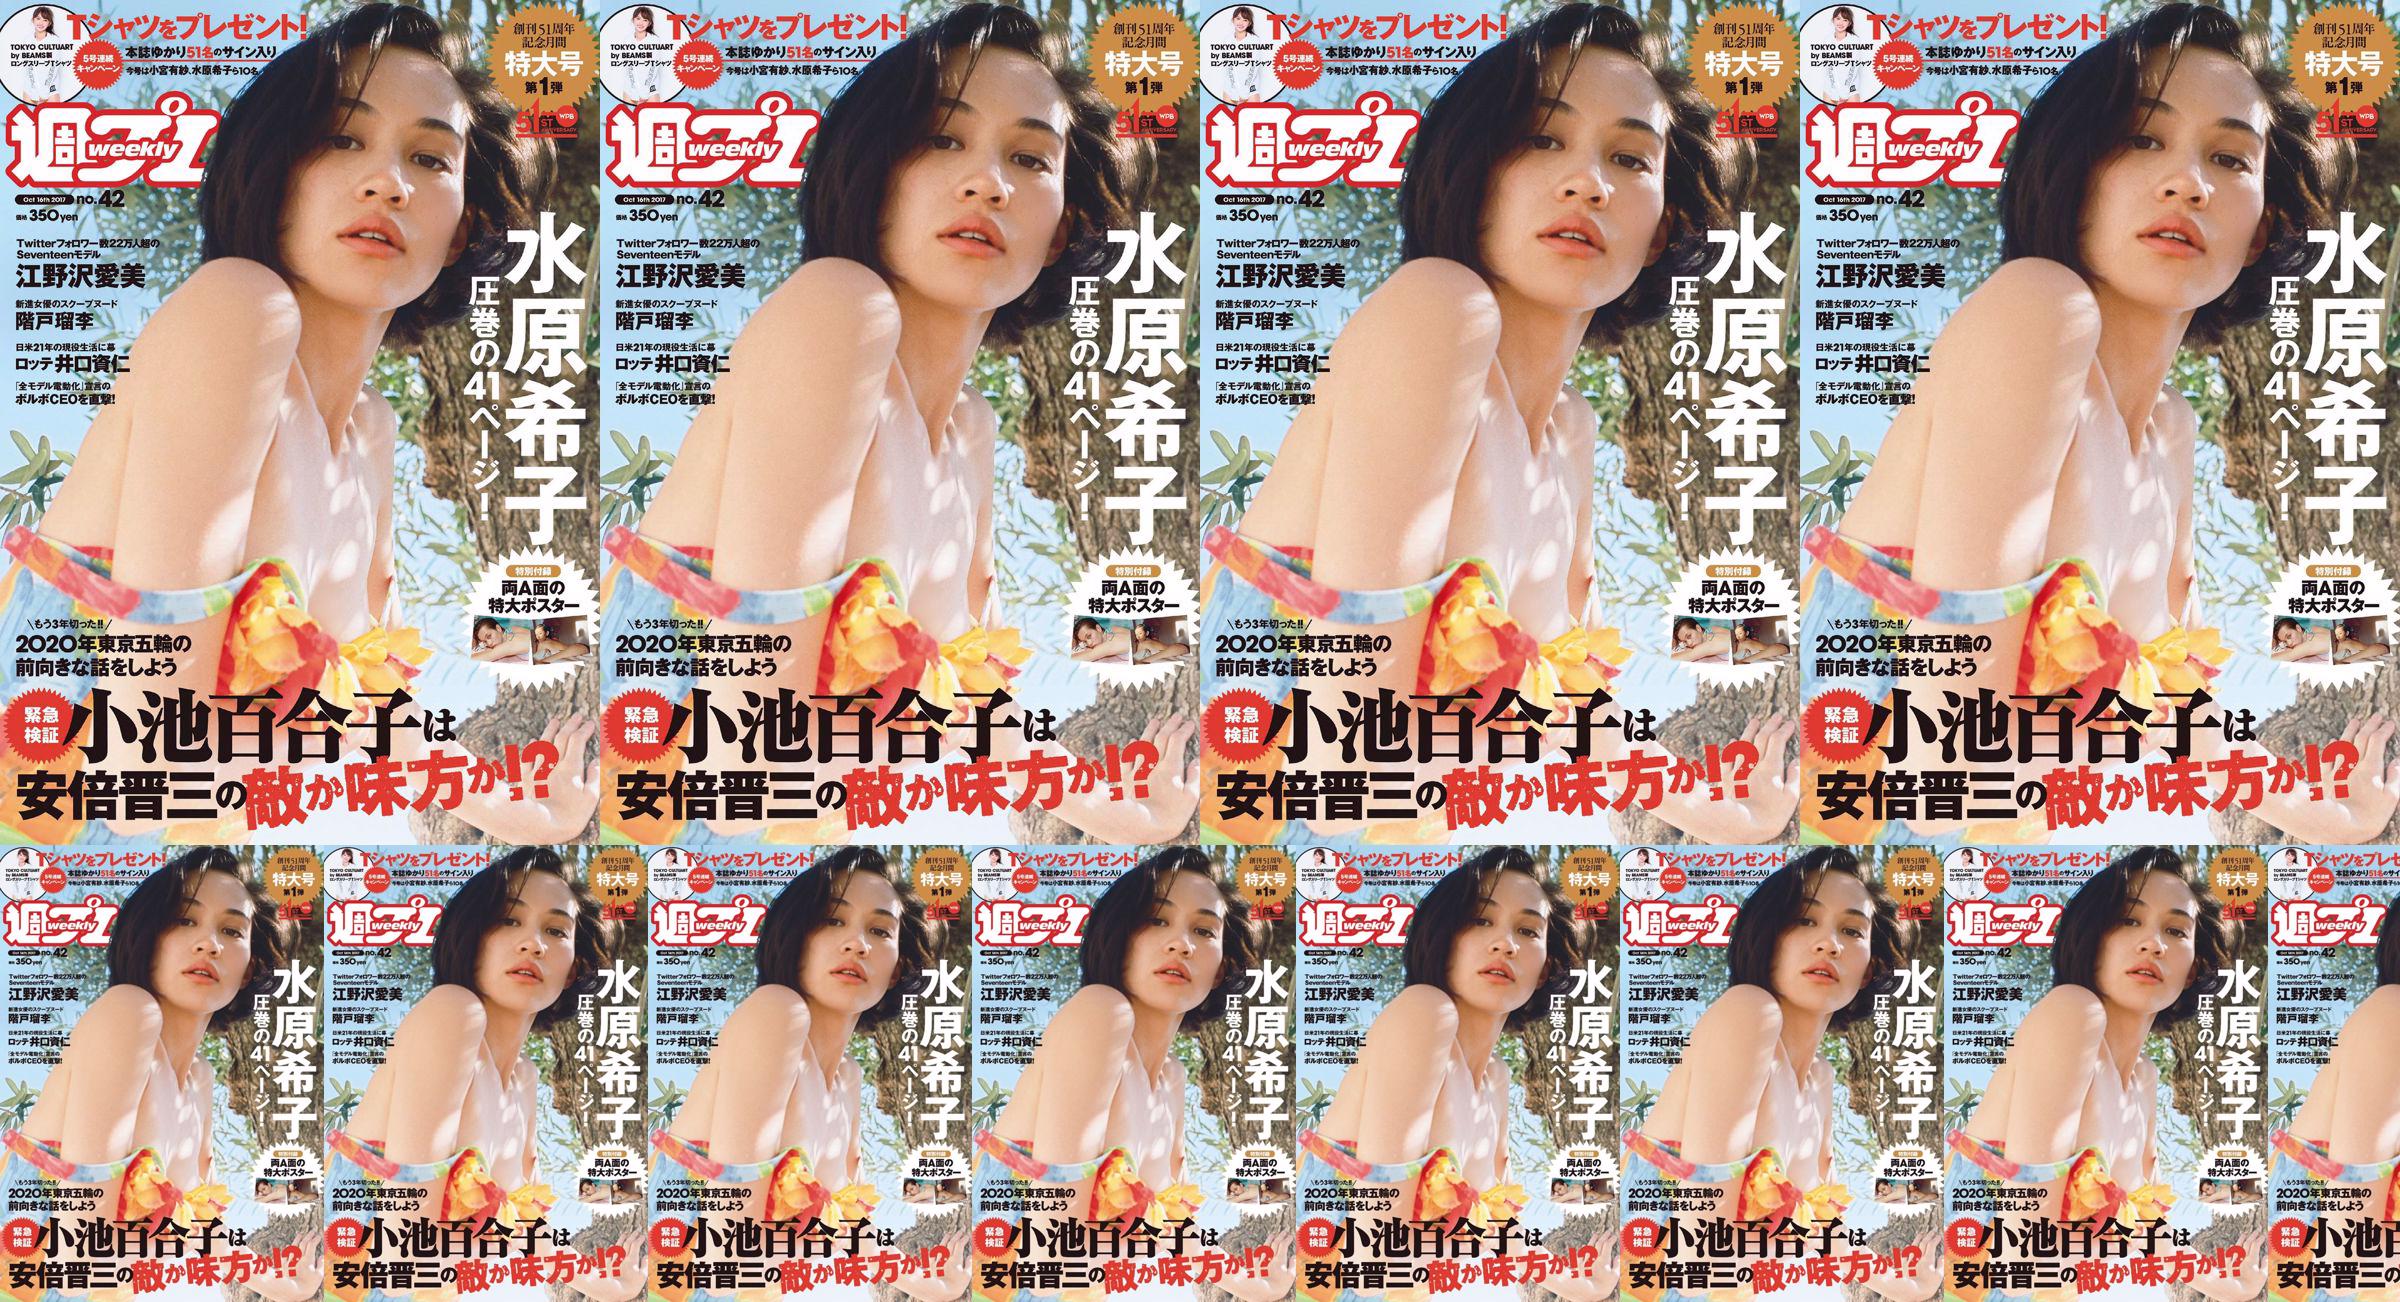 Kiko Mizuhara Manami Enosawa Serina Fukui Miu Nakamura Ruri Shinato [Weekly Playboy] 2017 No.42 Photo Magazine No.fbde3c Pagina 2